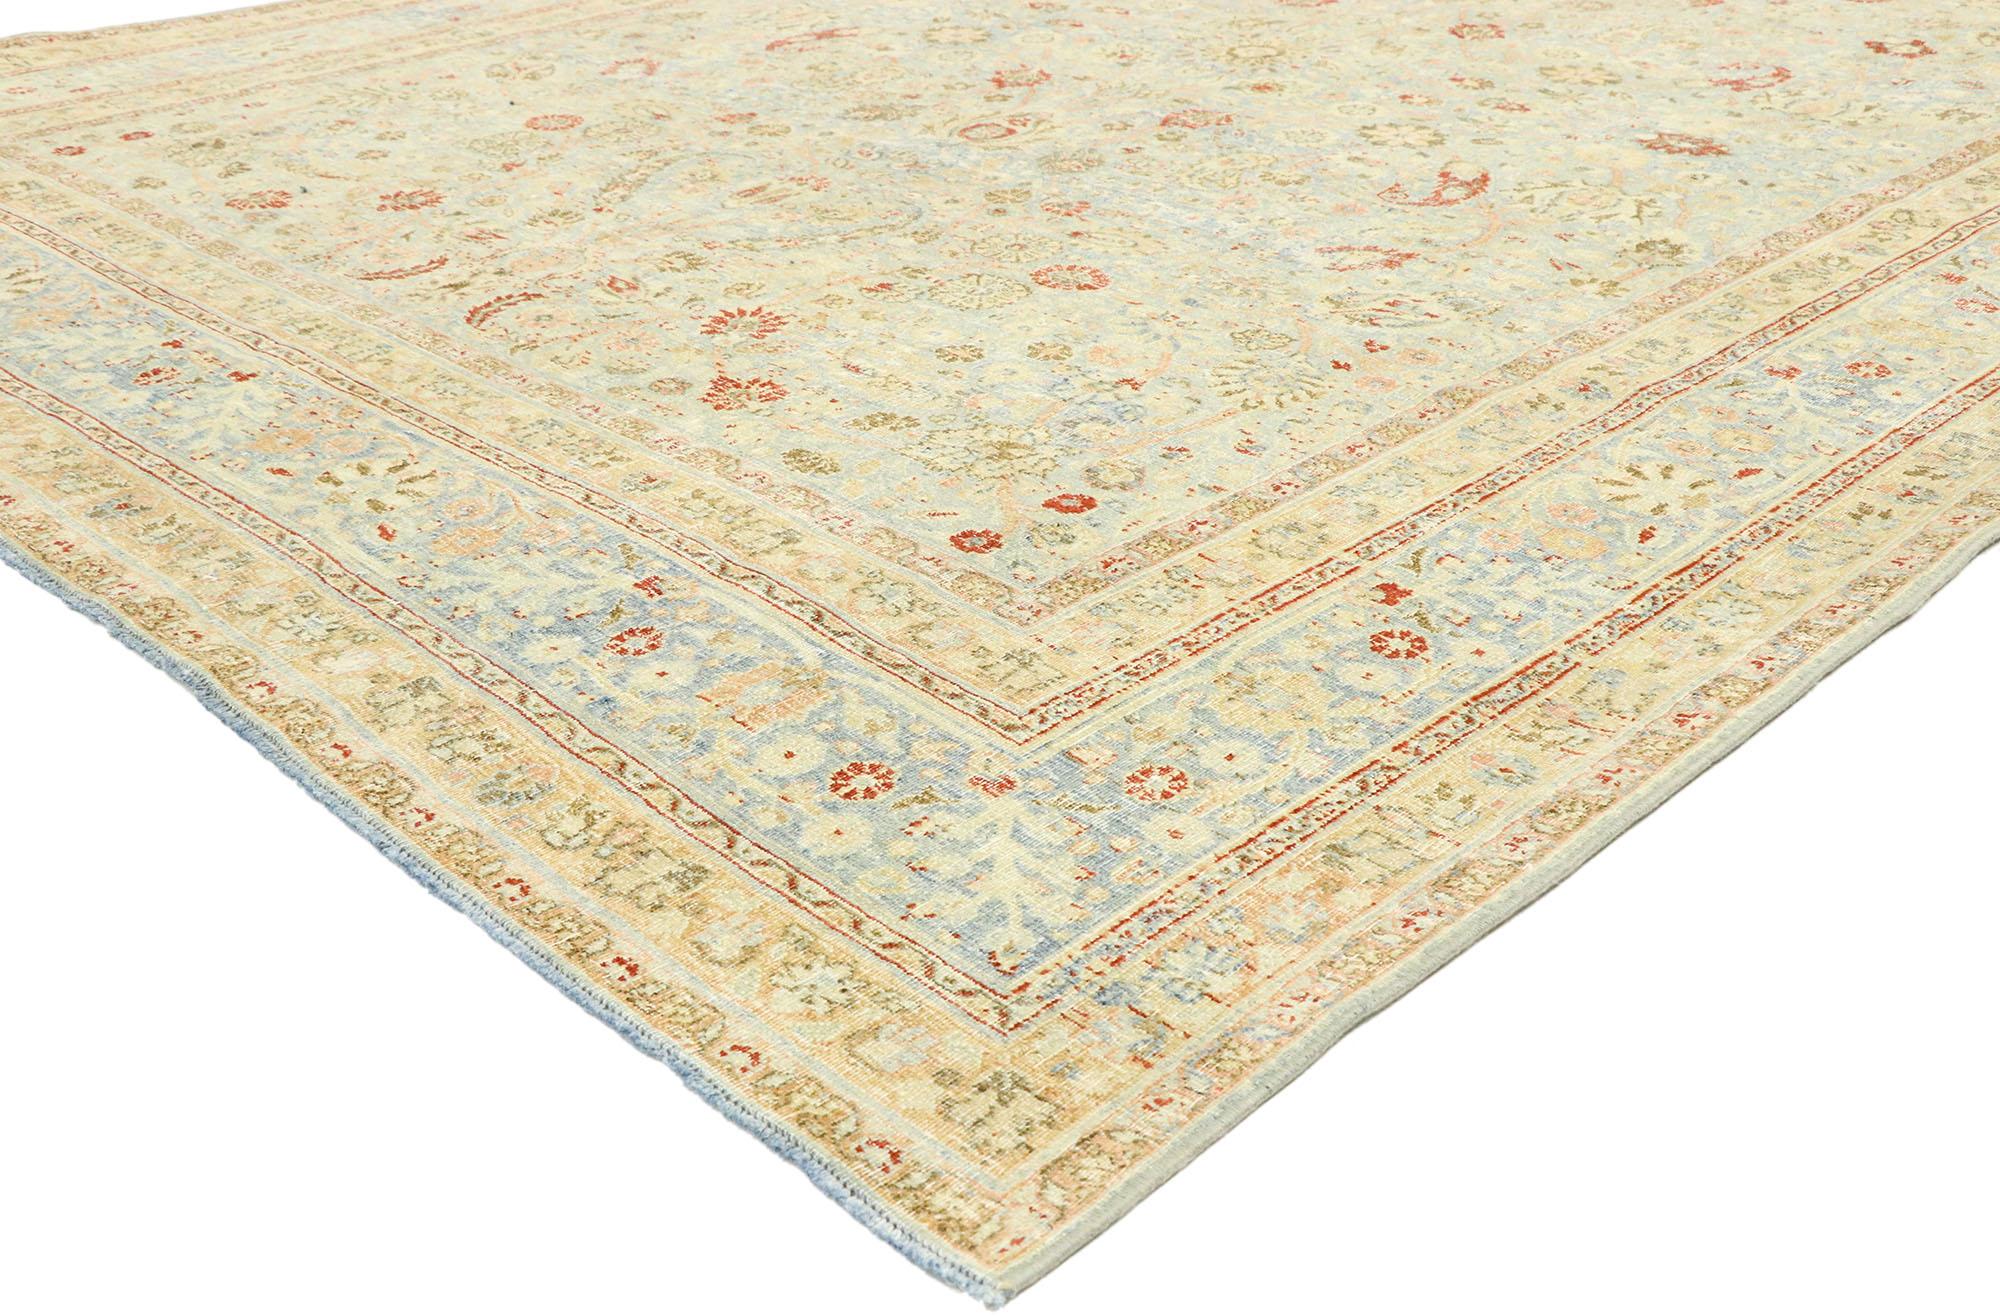 53036, tapis antique persan Khorassan en détresse de style Rustic English Manor. Avec son motif floral intemporel et son apparence amoureusement usée par le temps, ce tapis Khorassan antique en laine nouée à la main et vieillie incarne